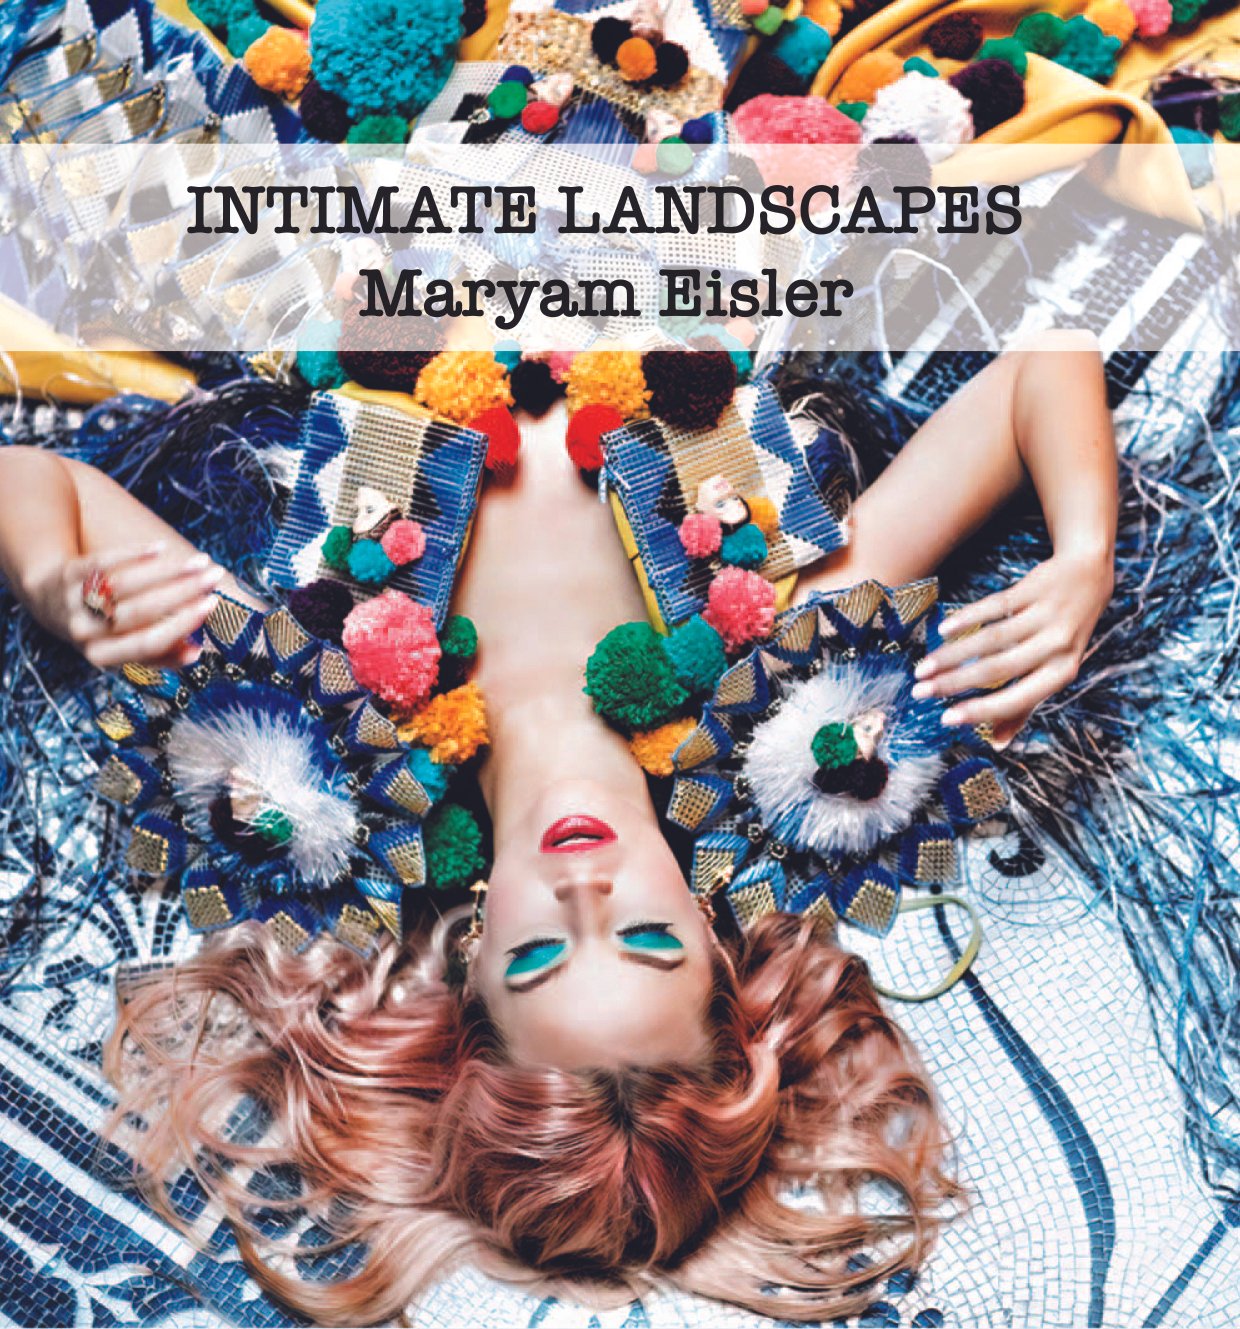 Intimate Landscapes  MARYAM EISLER  Exhibition  Catalogue-1.jpg